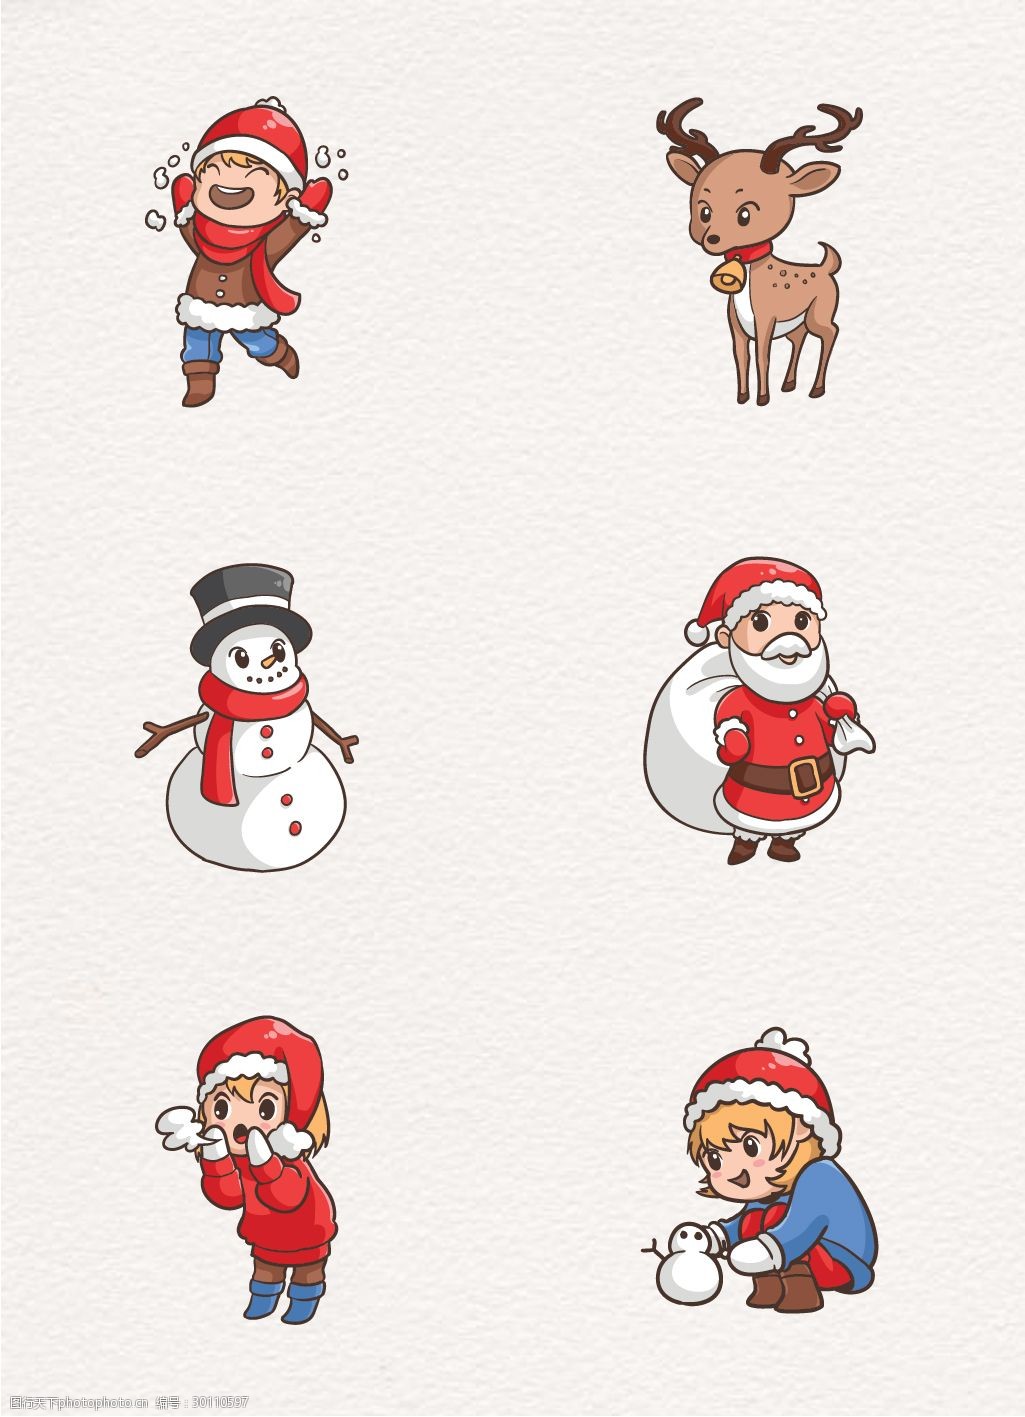 关键词:可爱圣诞角色设计矢量素材 圣诞老人 冬季 卡通 圣诞节 矢量图